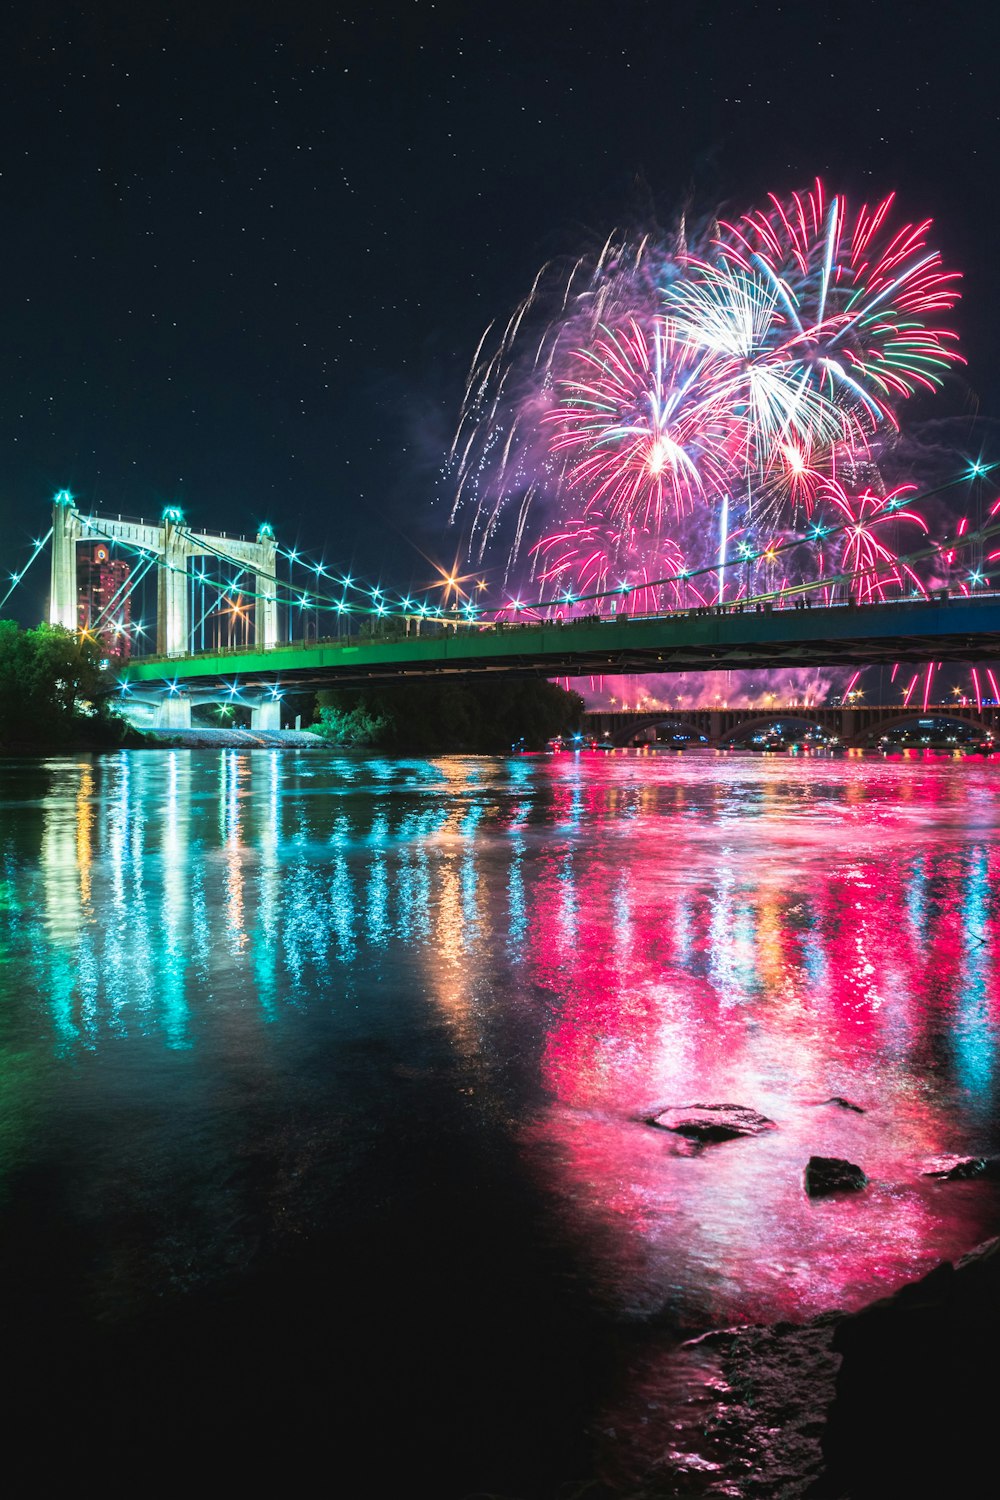 exibição de fogos de artifício sobre a ponte sobre o rio durante a noite